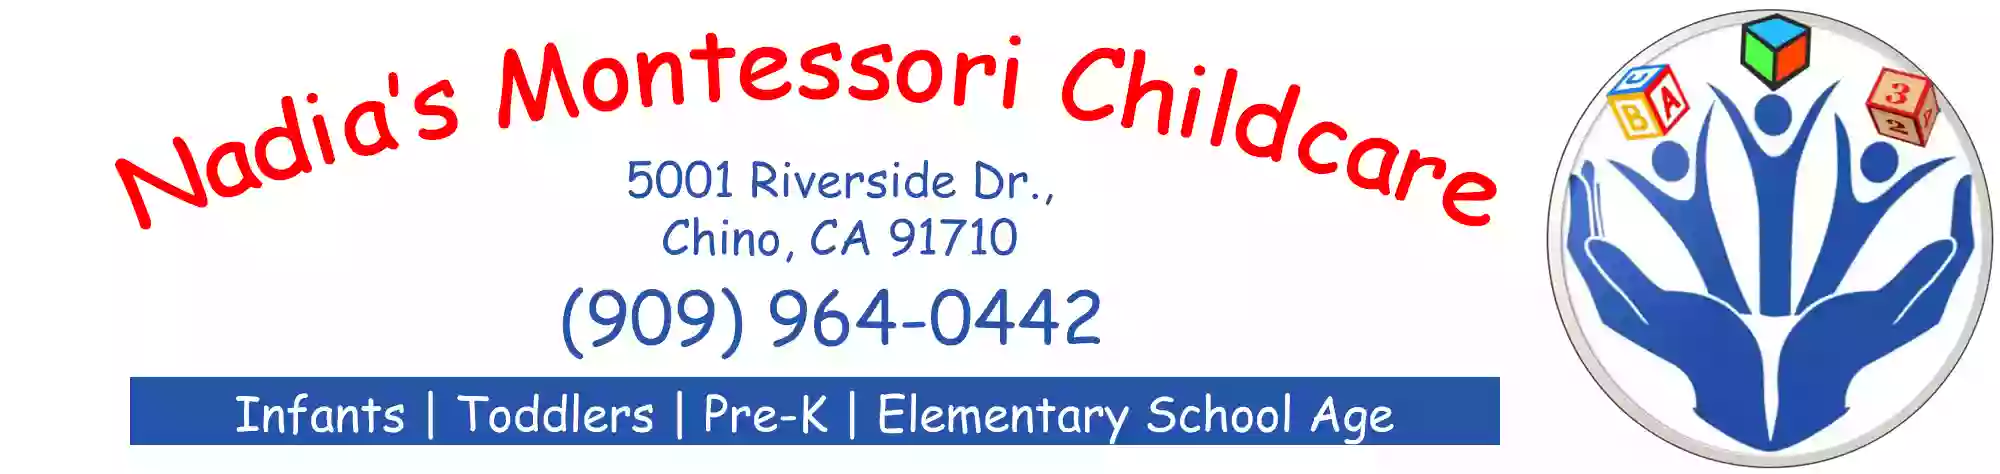 Nadia’s Montessori Childcare Chino